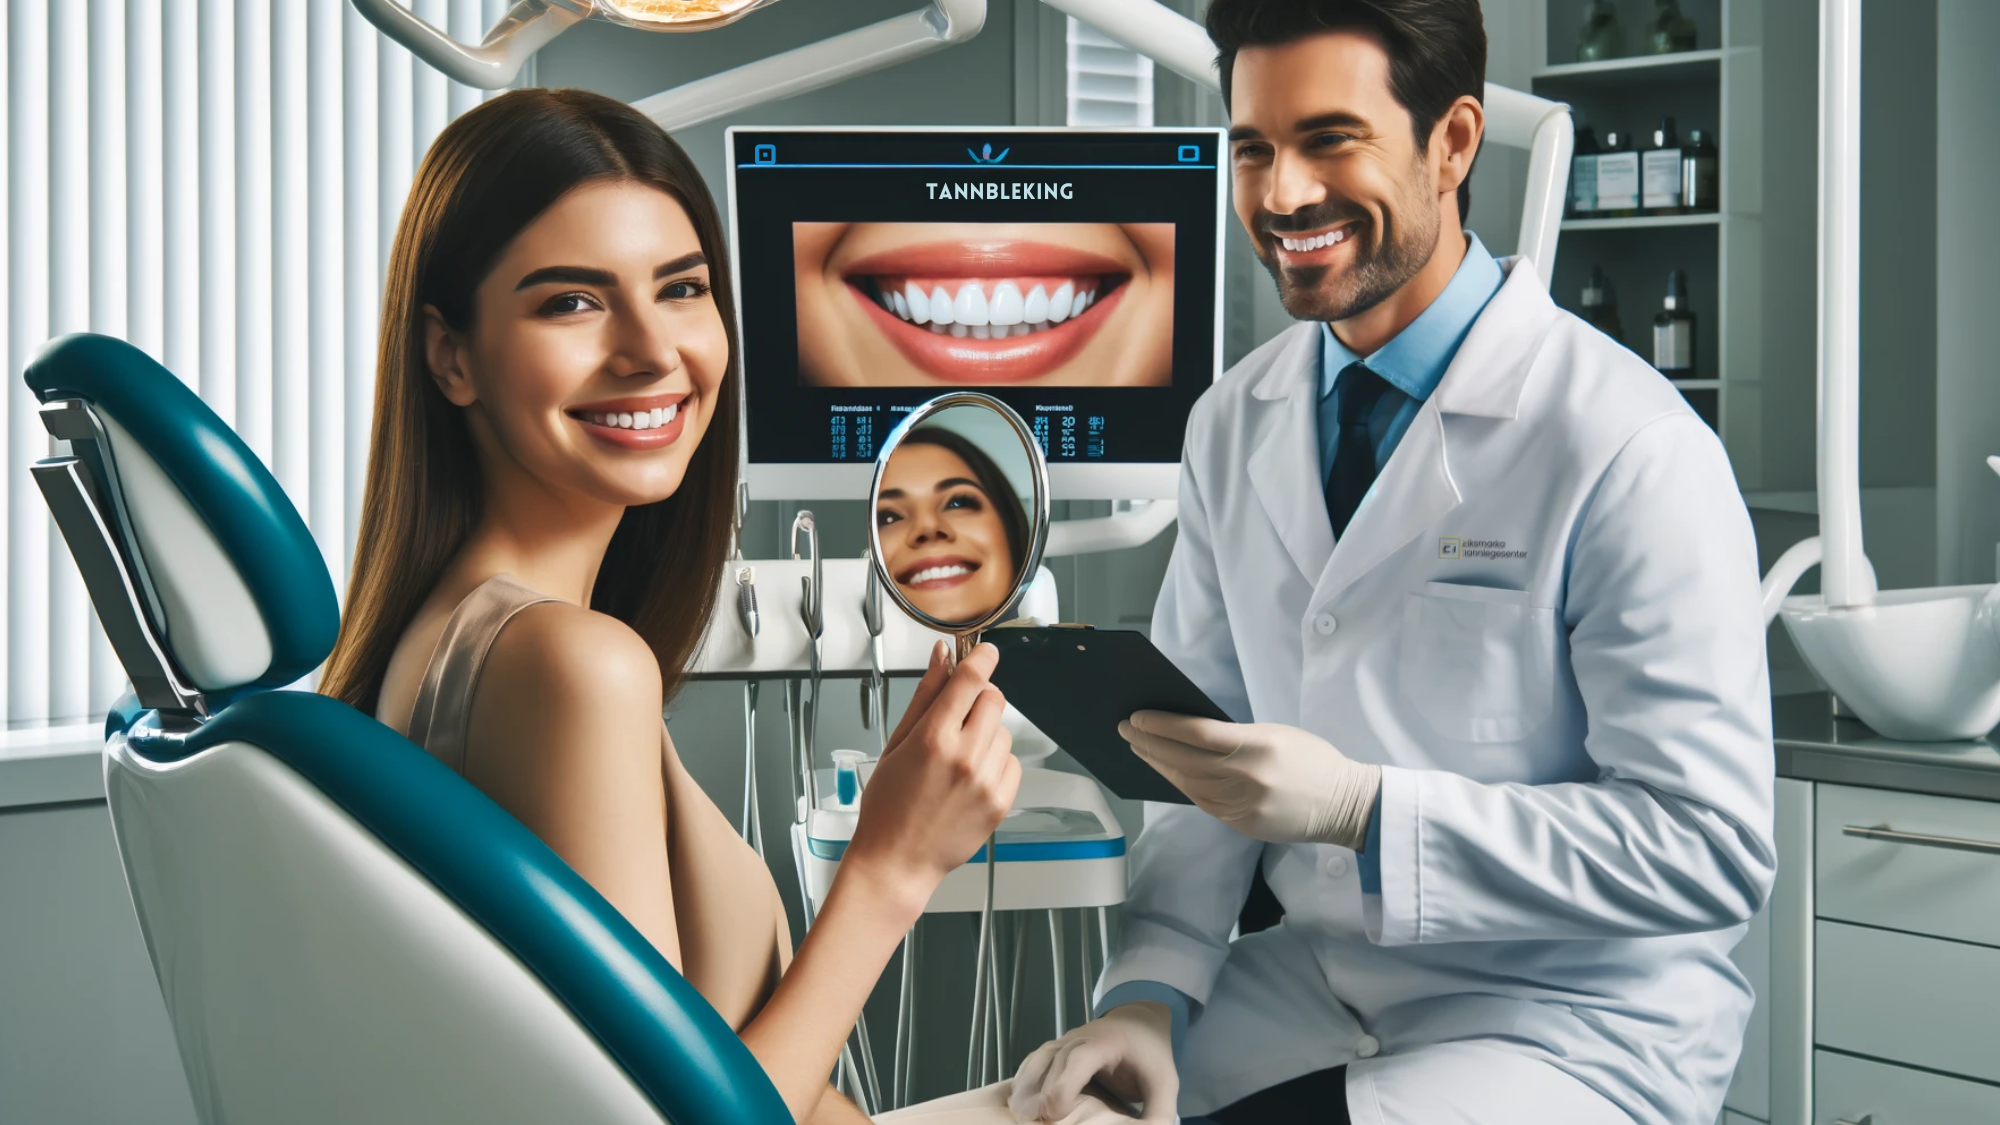 Tannlege demonstrerer tannbleking til pasient i moderne klinikk